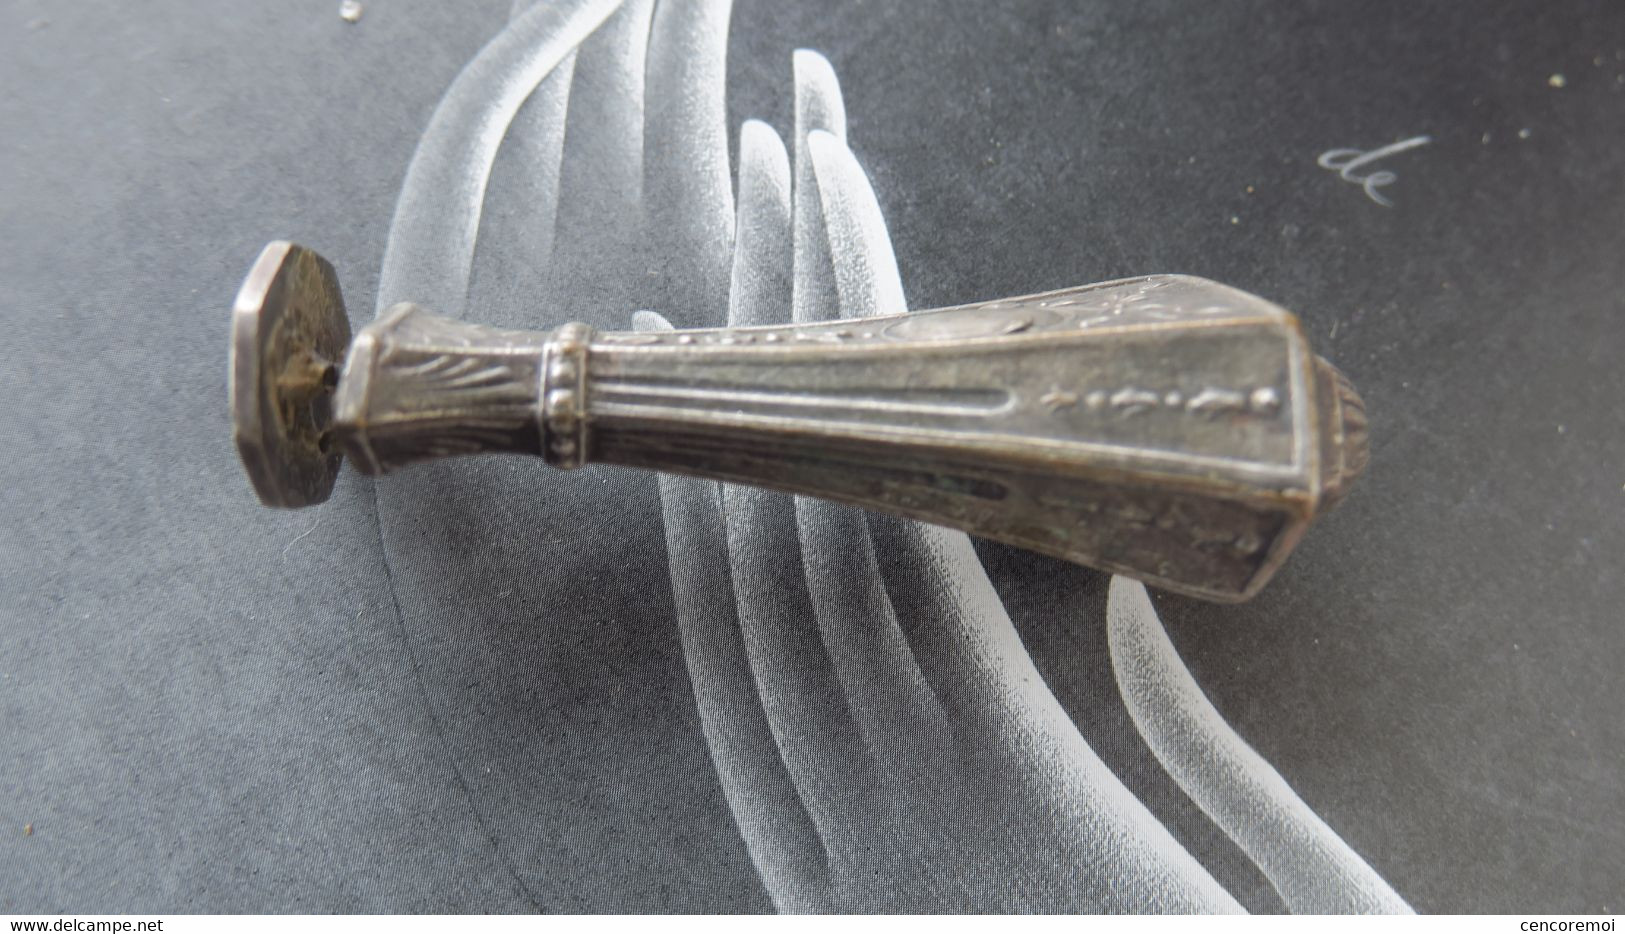 Joli sceau-cachet-tampon ancien en métal argenté, jolie ciselure